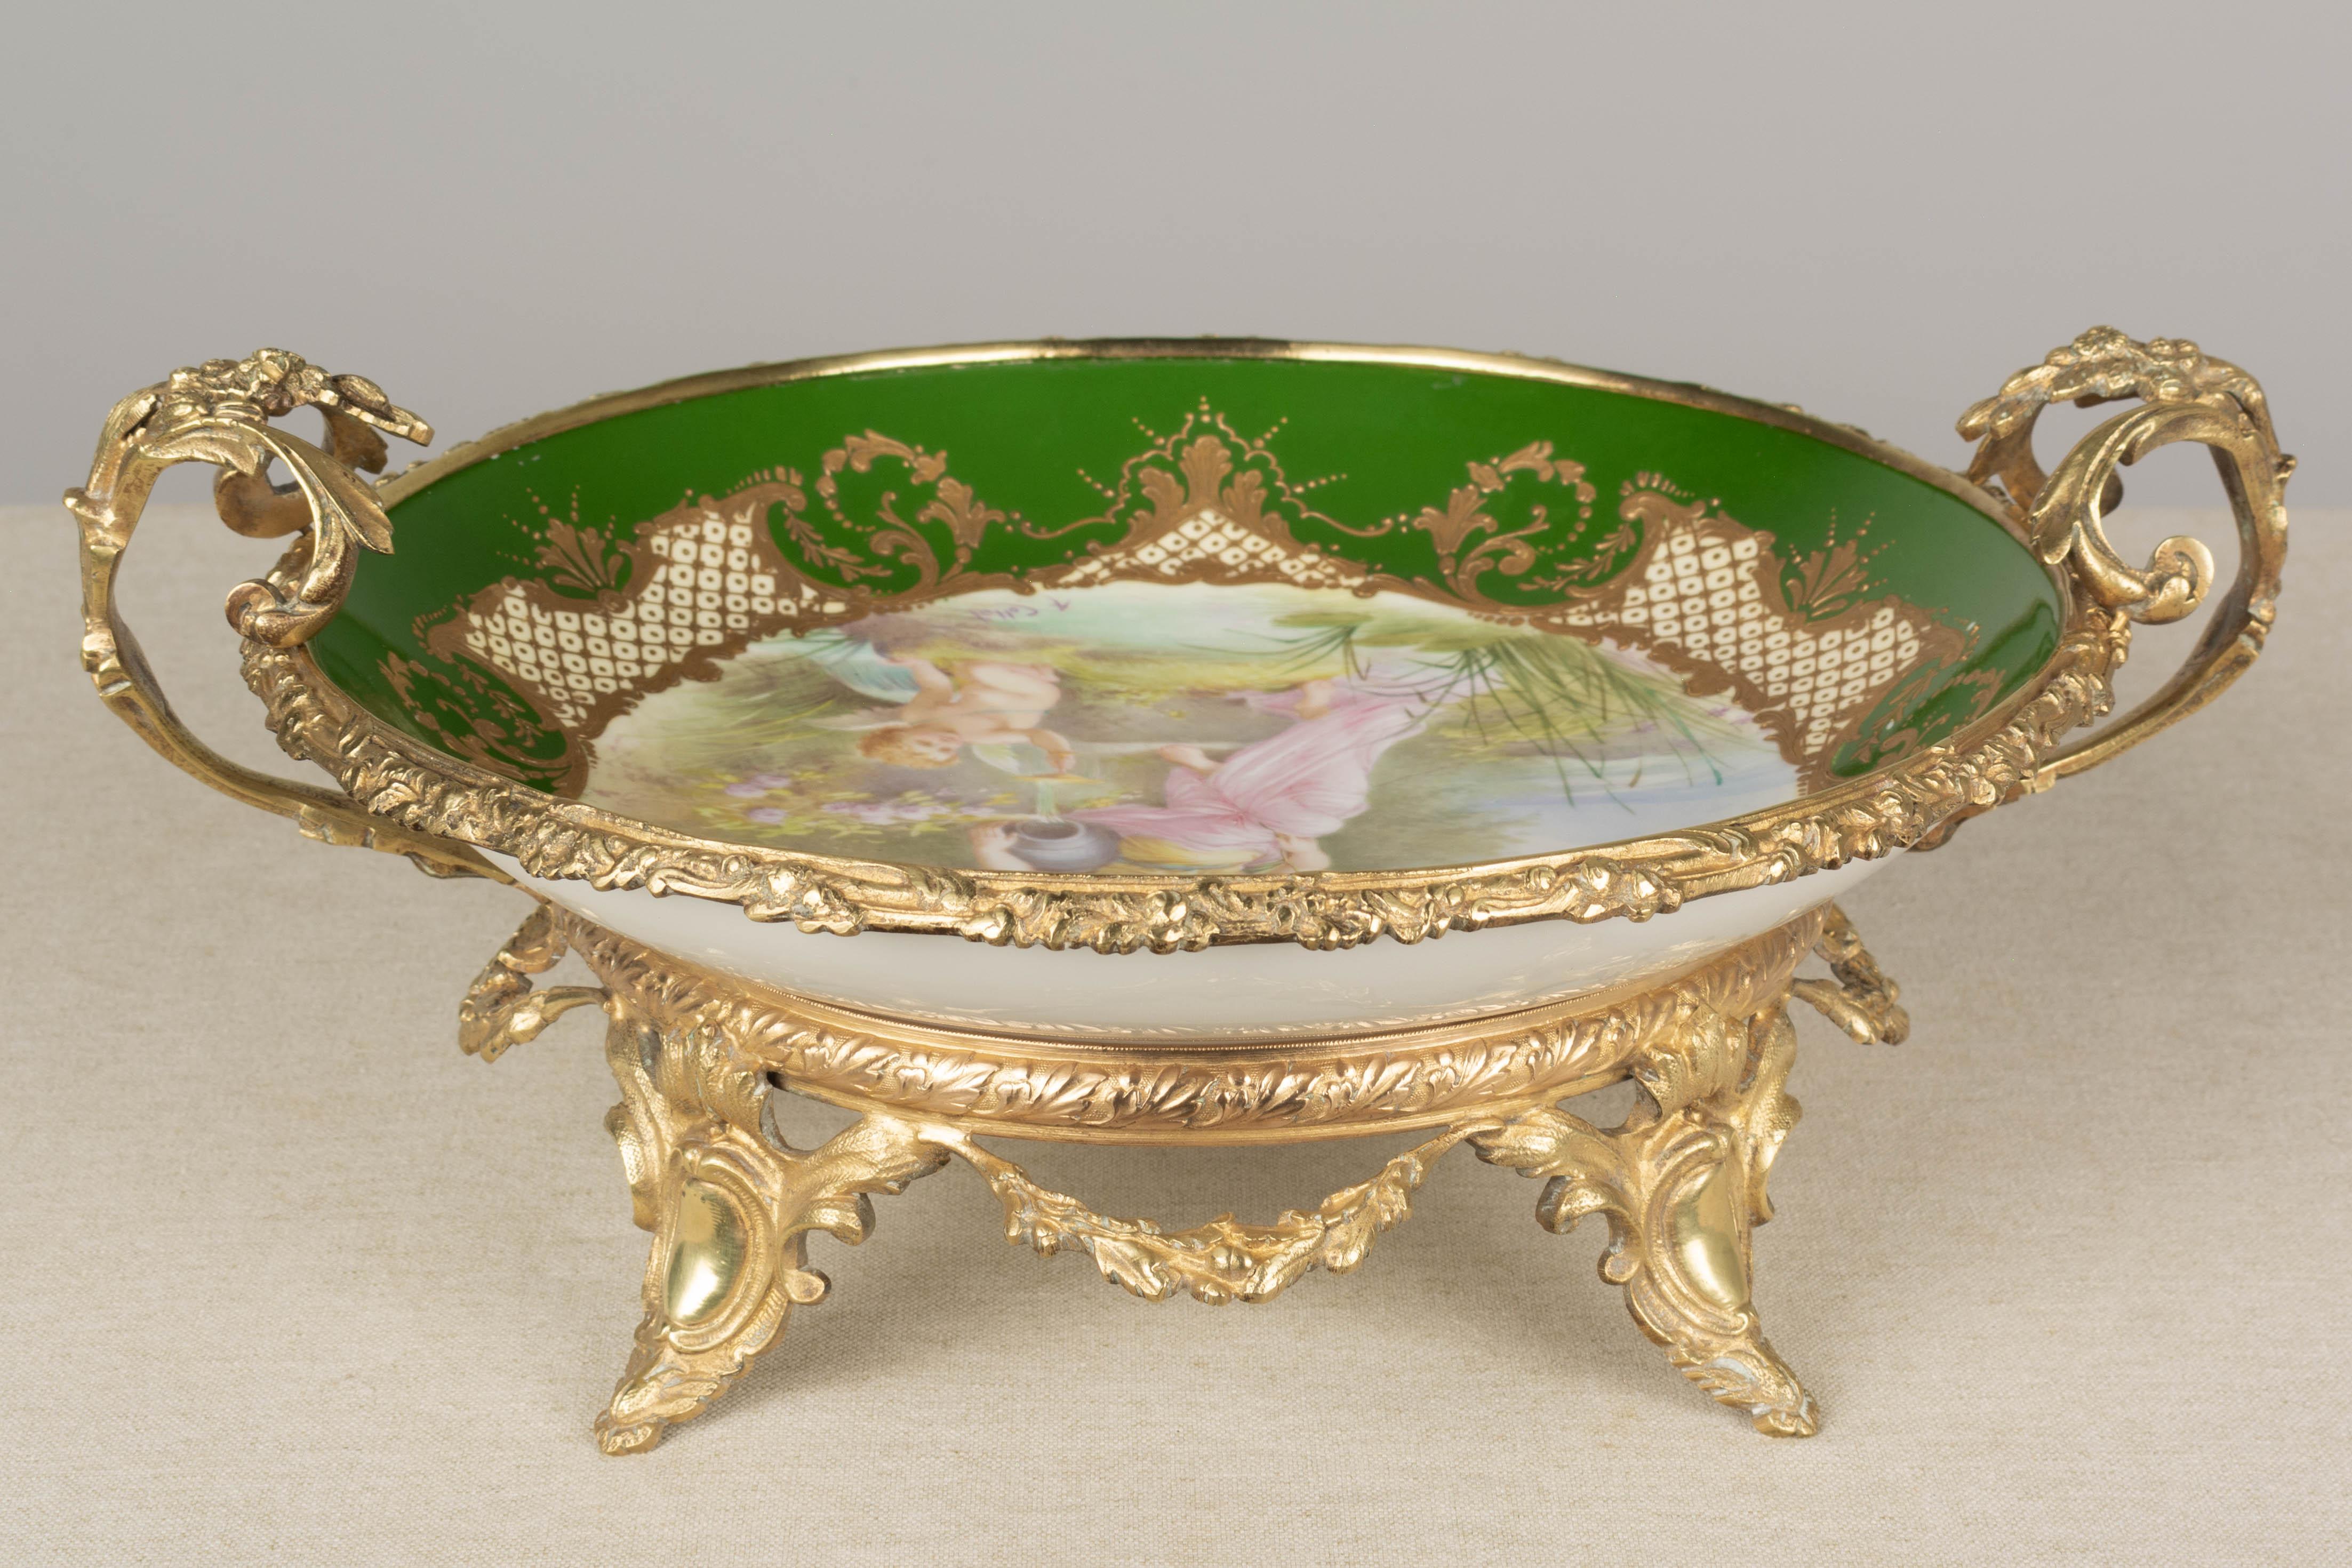 Beaux Arts 19th Century French Ormolu Sèvres Porcelain Centerpiece Bowl For Sale